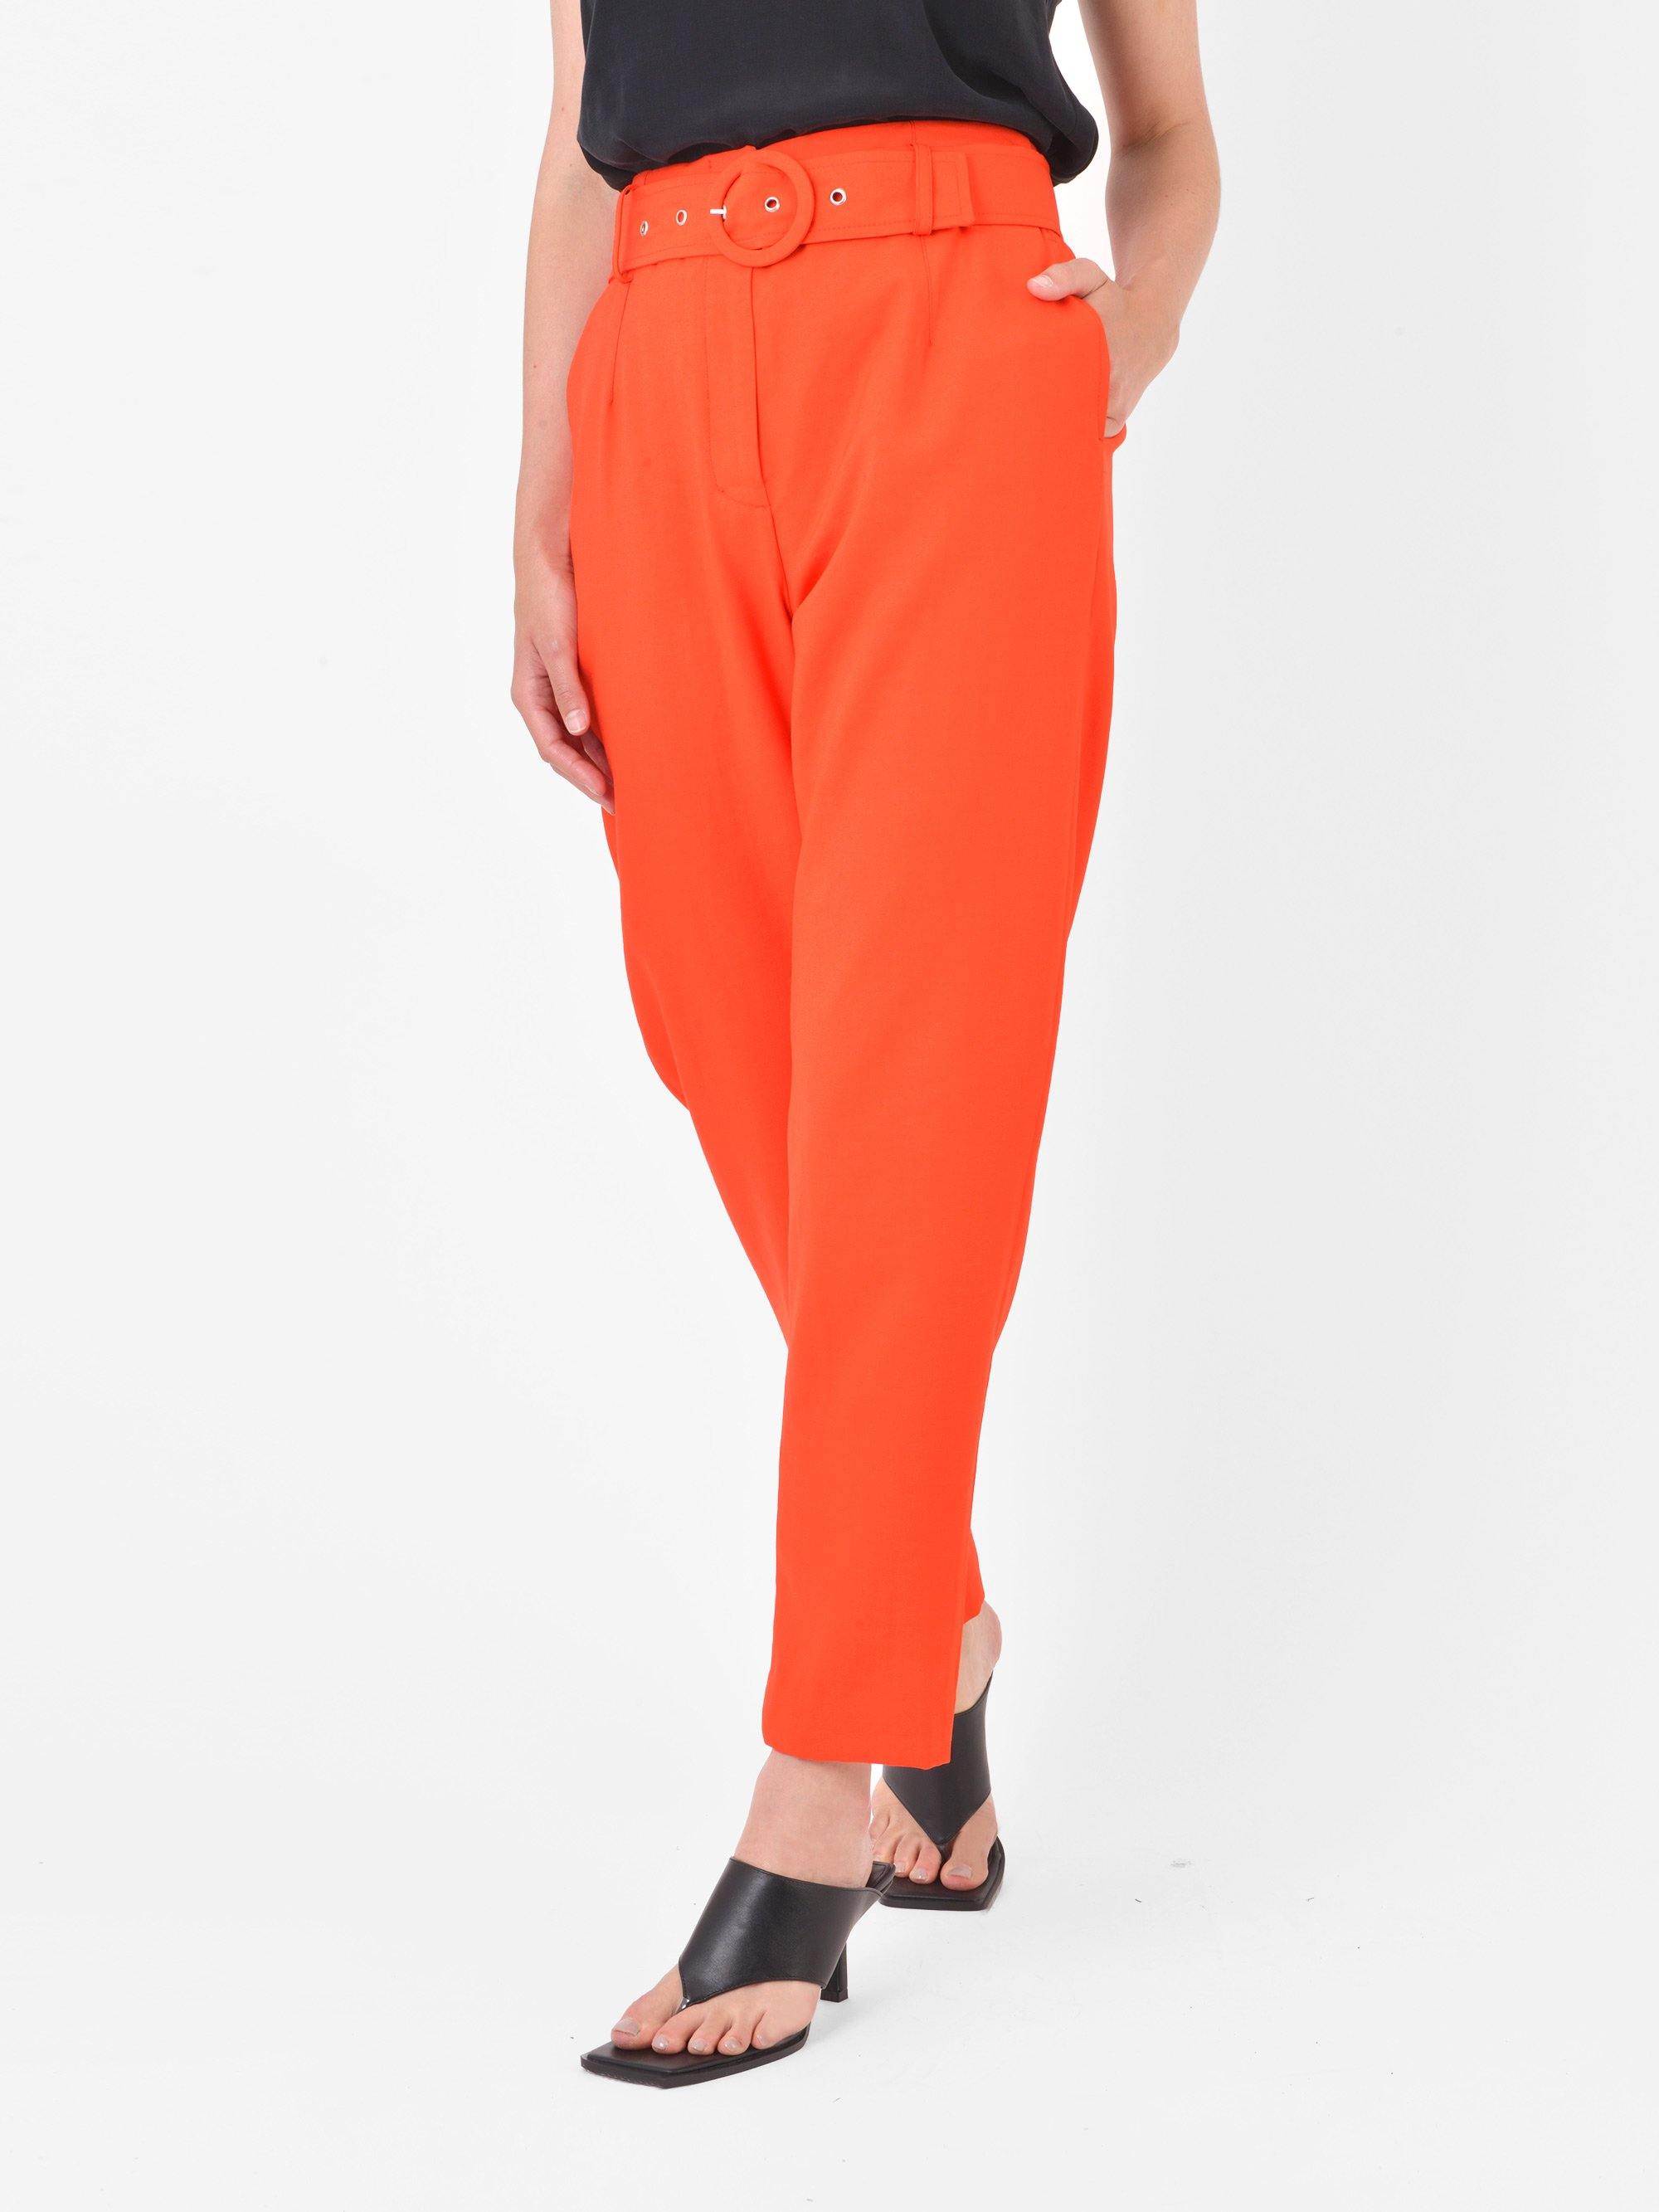 Zara High Waist Belted Trousers | Zara, Clothes design, Waist belt